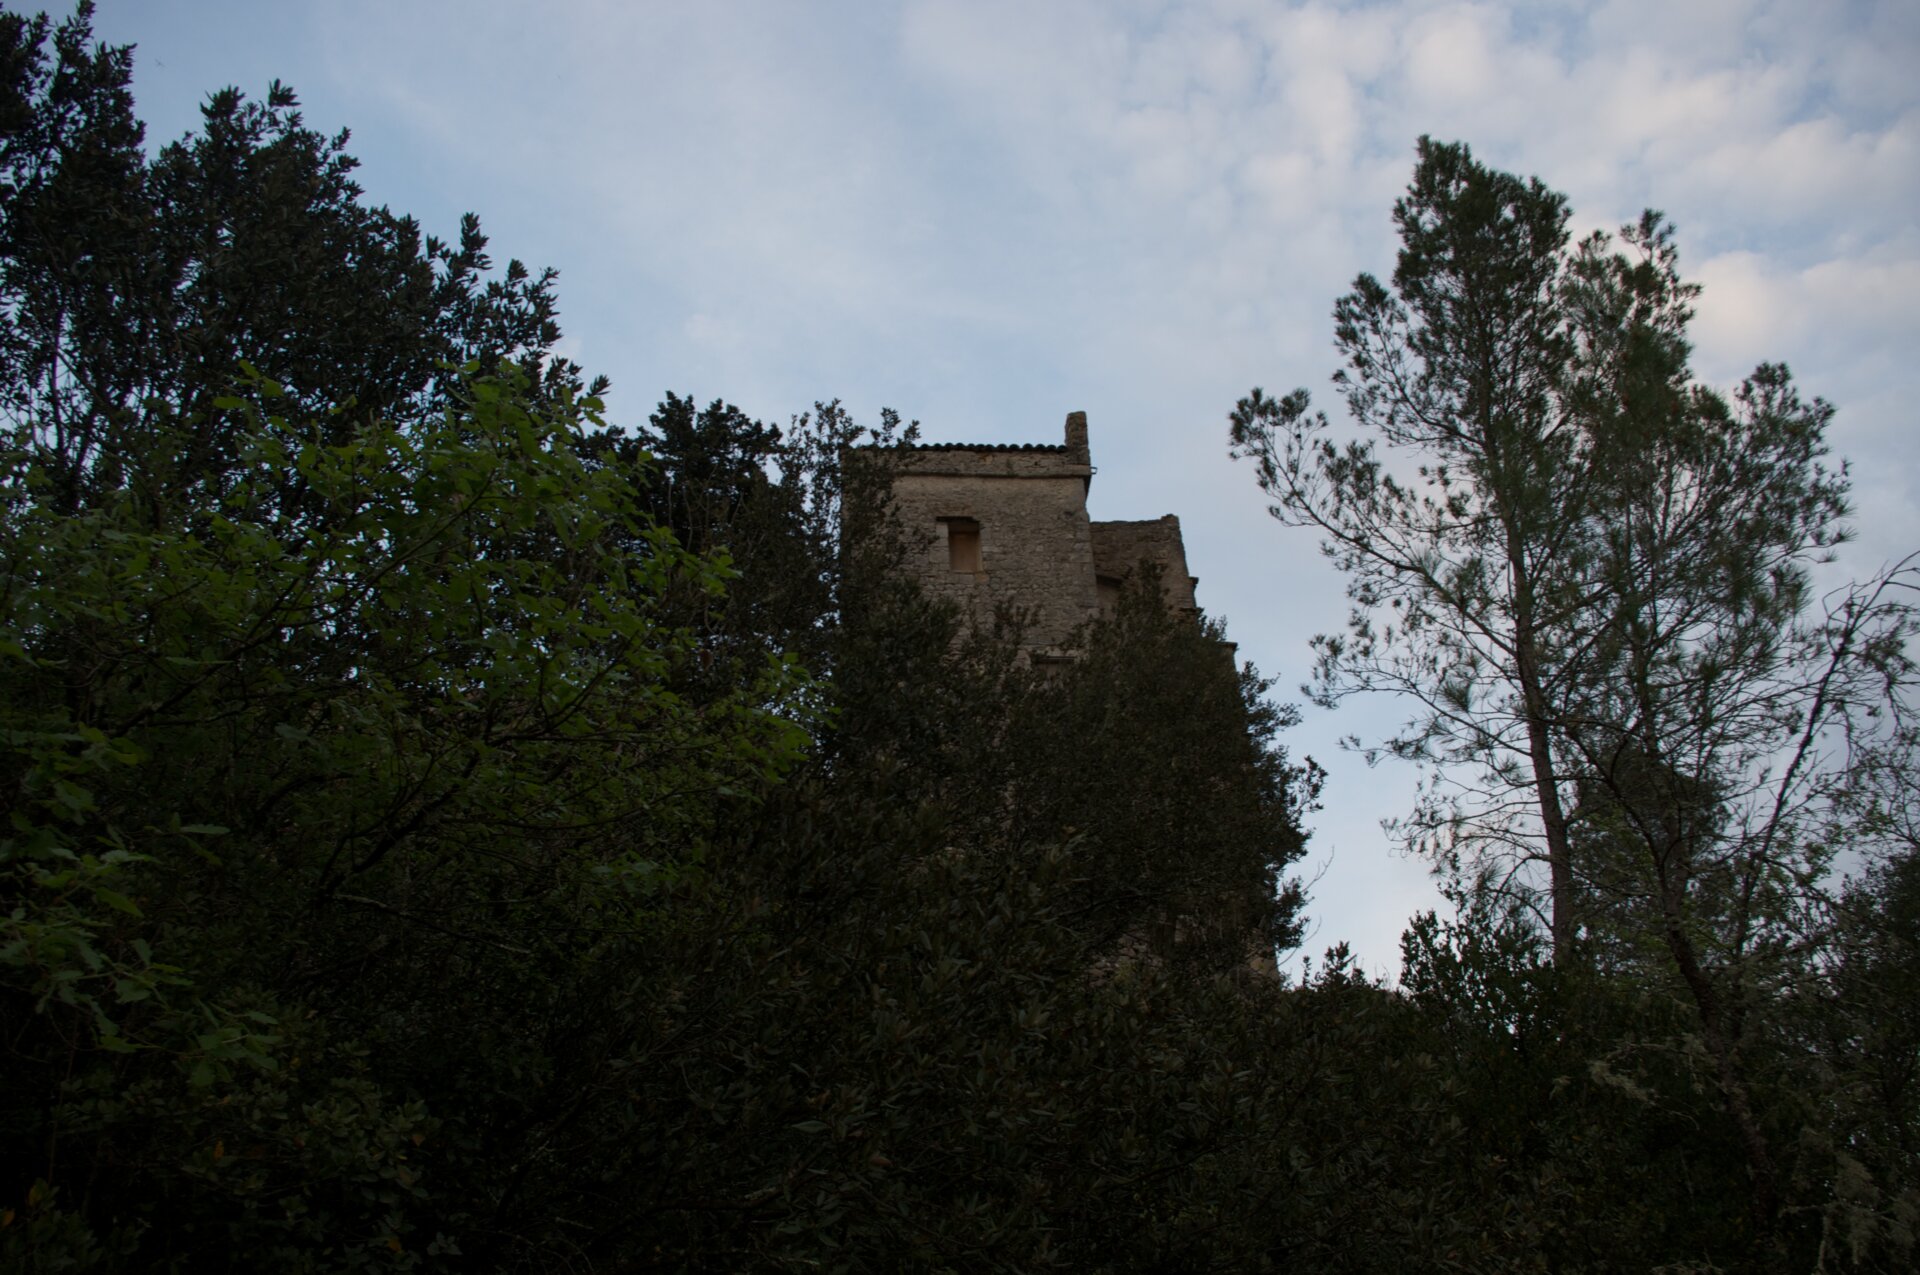 Château de Roquevaire